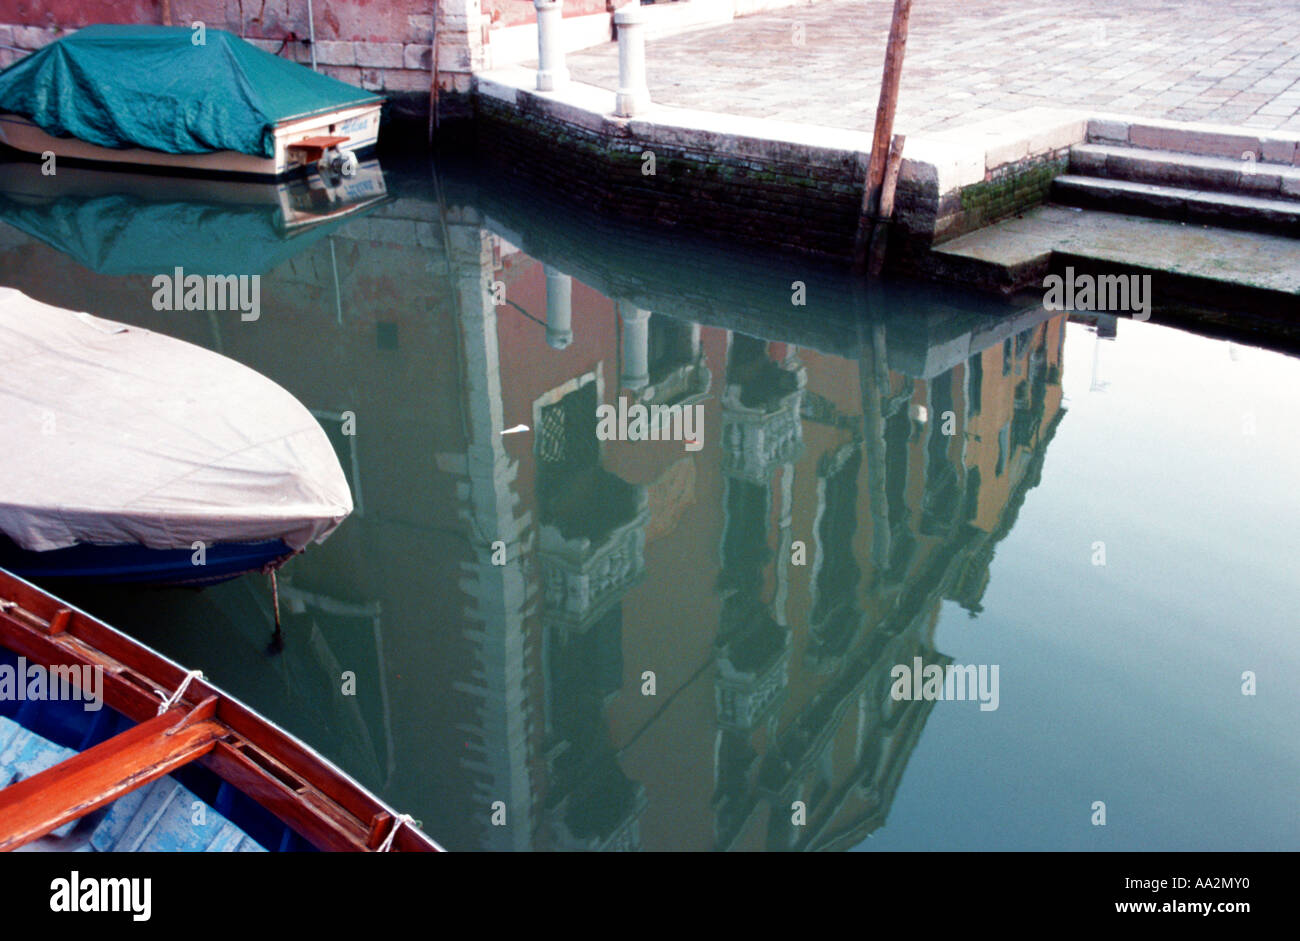 L'Italia, Venezia, stretto canale Campo Frari, edificio si riflette nel canal, barche ormeggiate, vista in elevazione Foto Stock